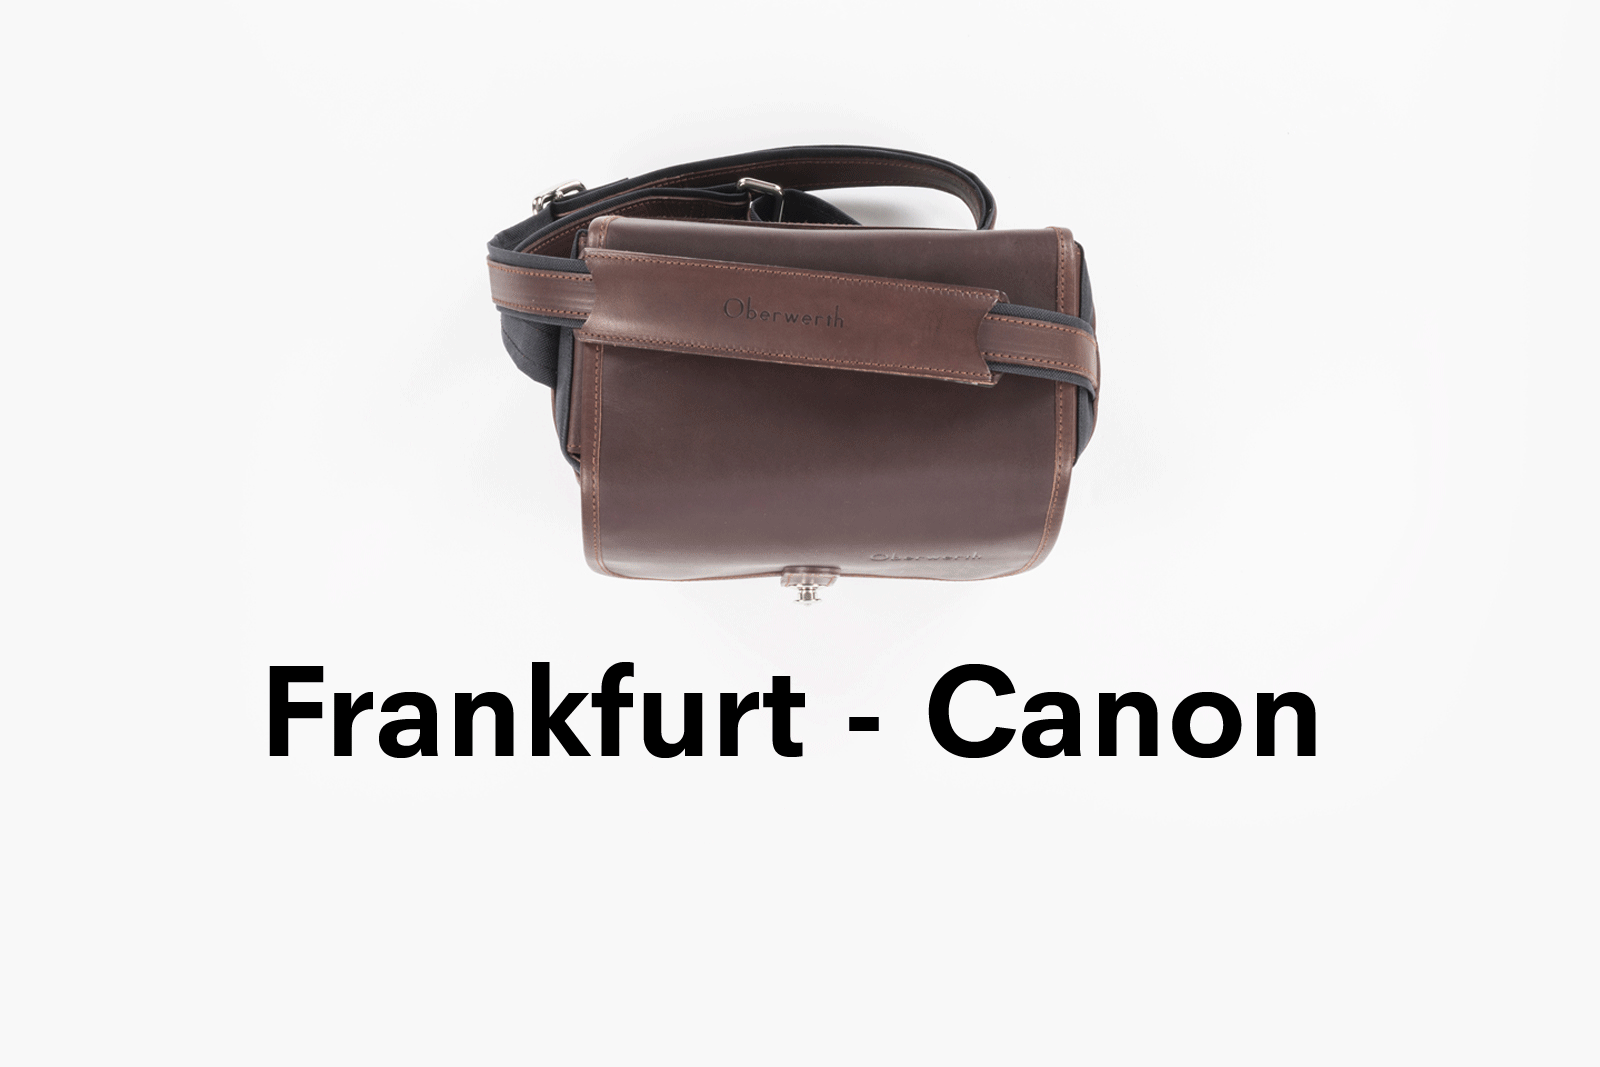 Camera bag FRANKFURT Chocolate